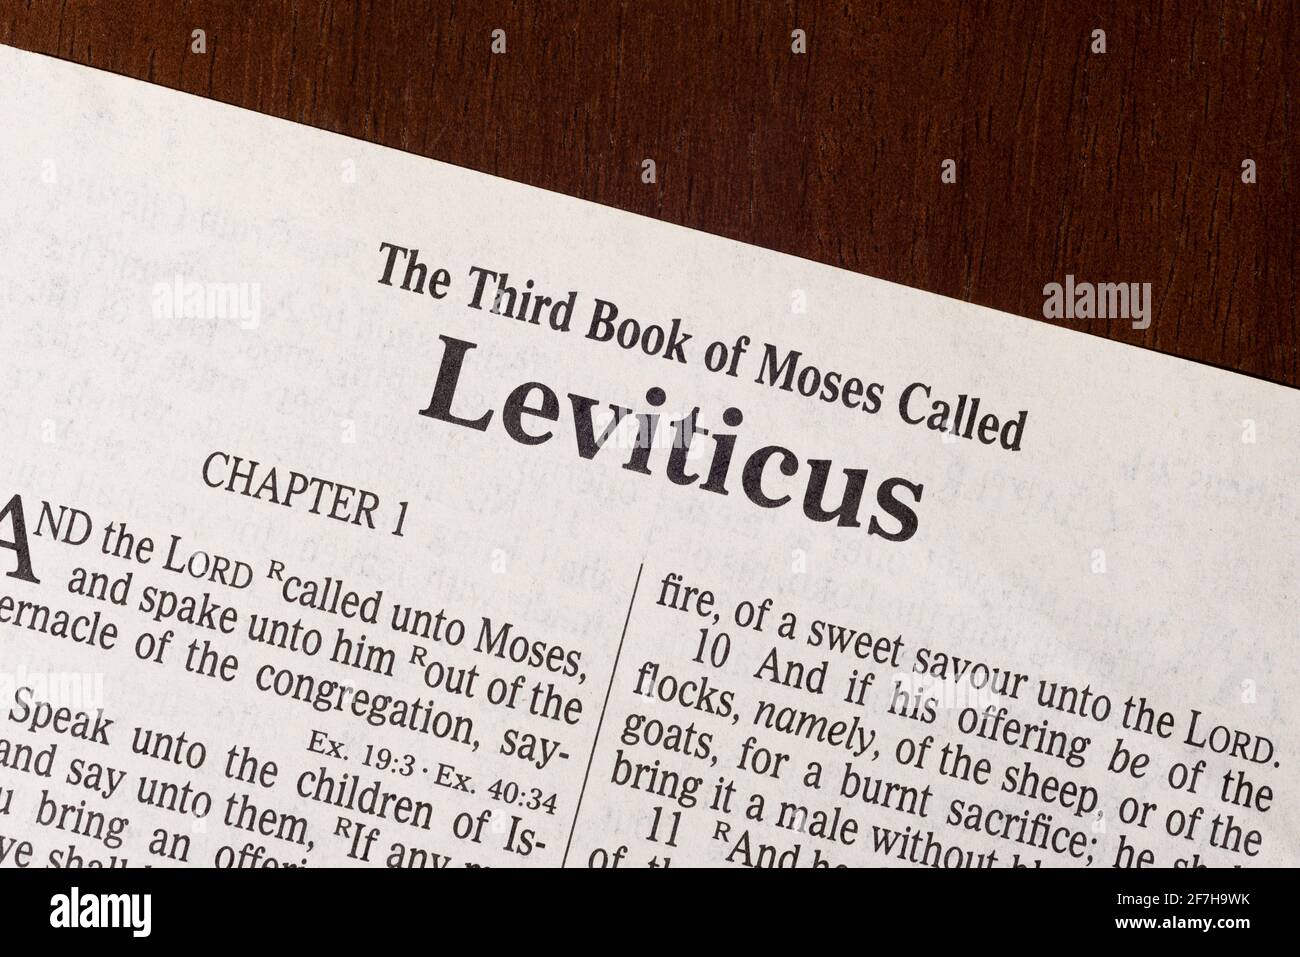 Dies ist die King James Bibel, die 1611 übersetzt wurde. Es gibt keine Urheberrechte. Ein gestochen scharfes Makrofoto der ersten Seite des Buches Leviticus. Stockfoto